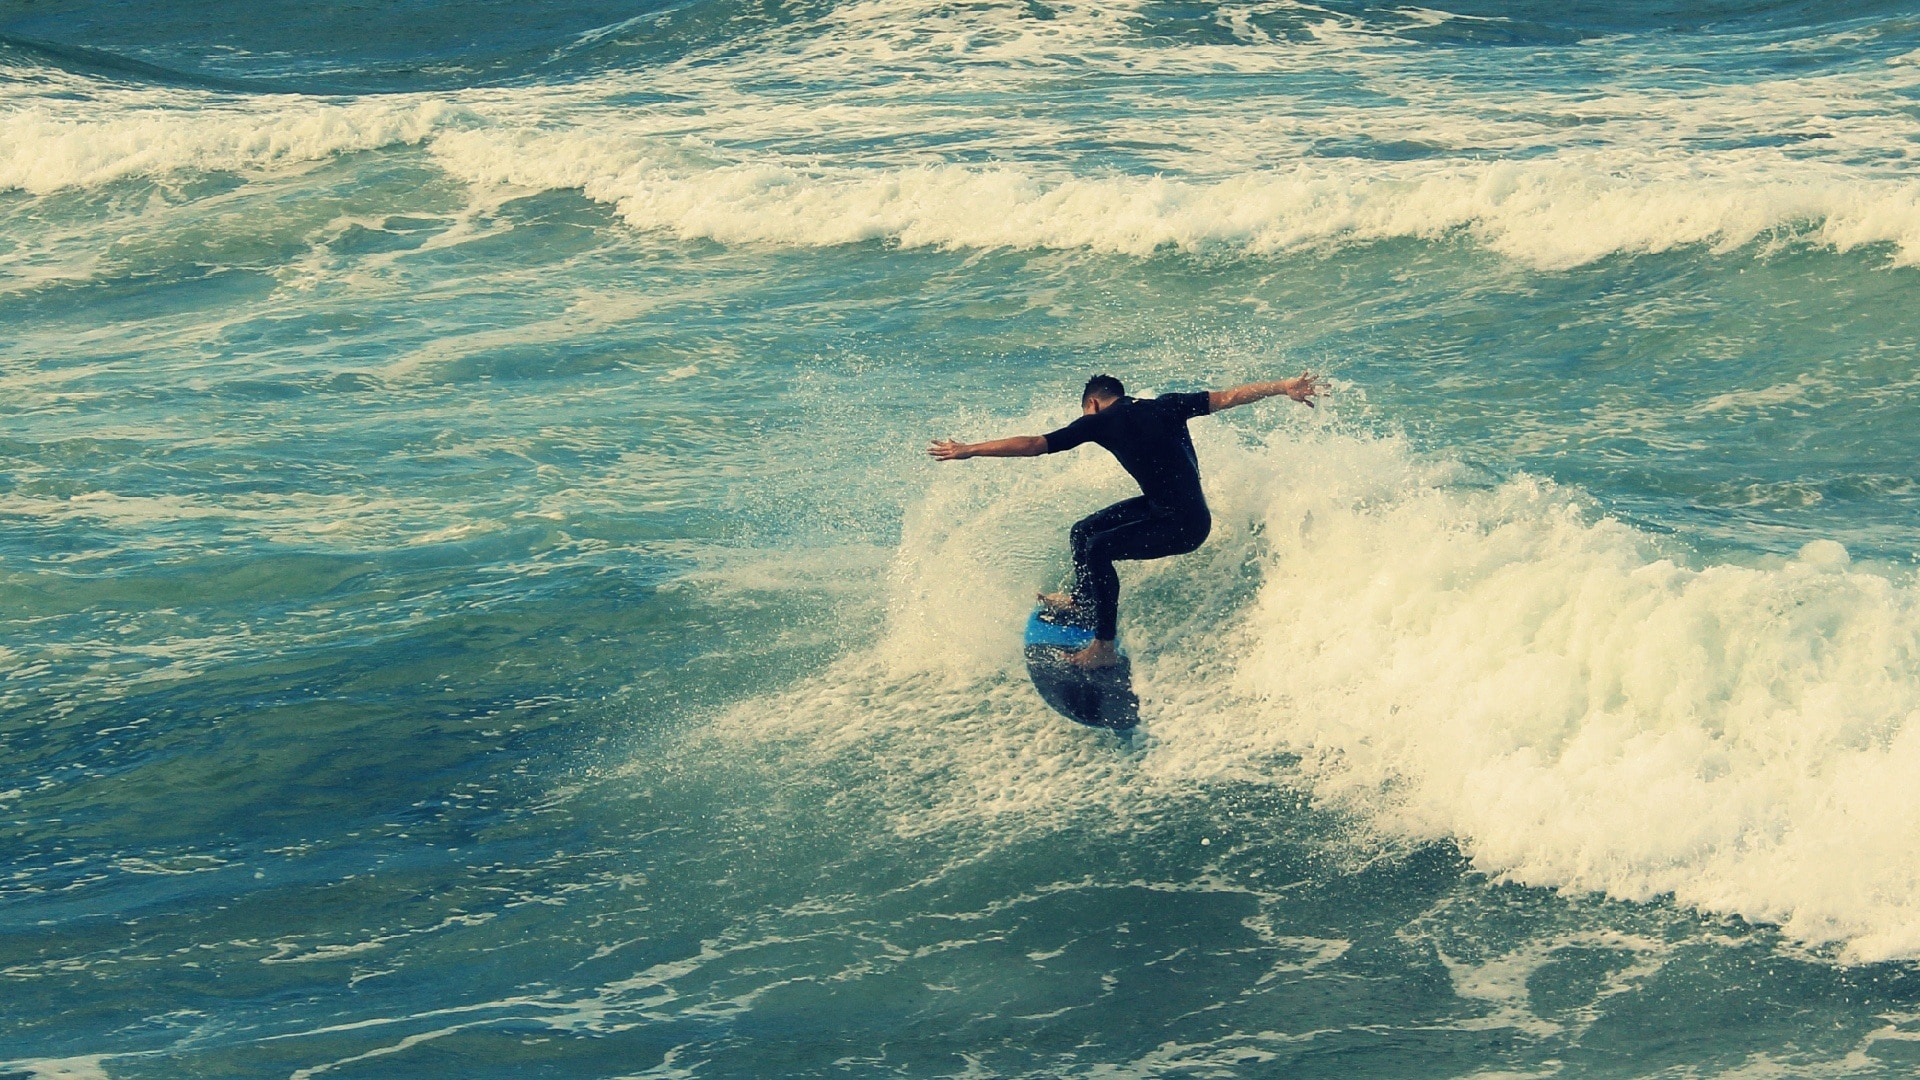 Surf, Beach, Surfing, Wave, Durban, wave, one person